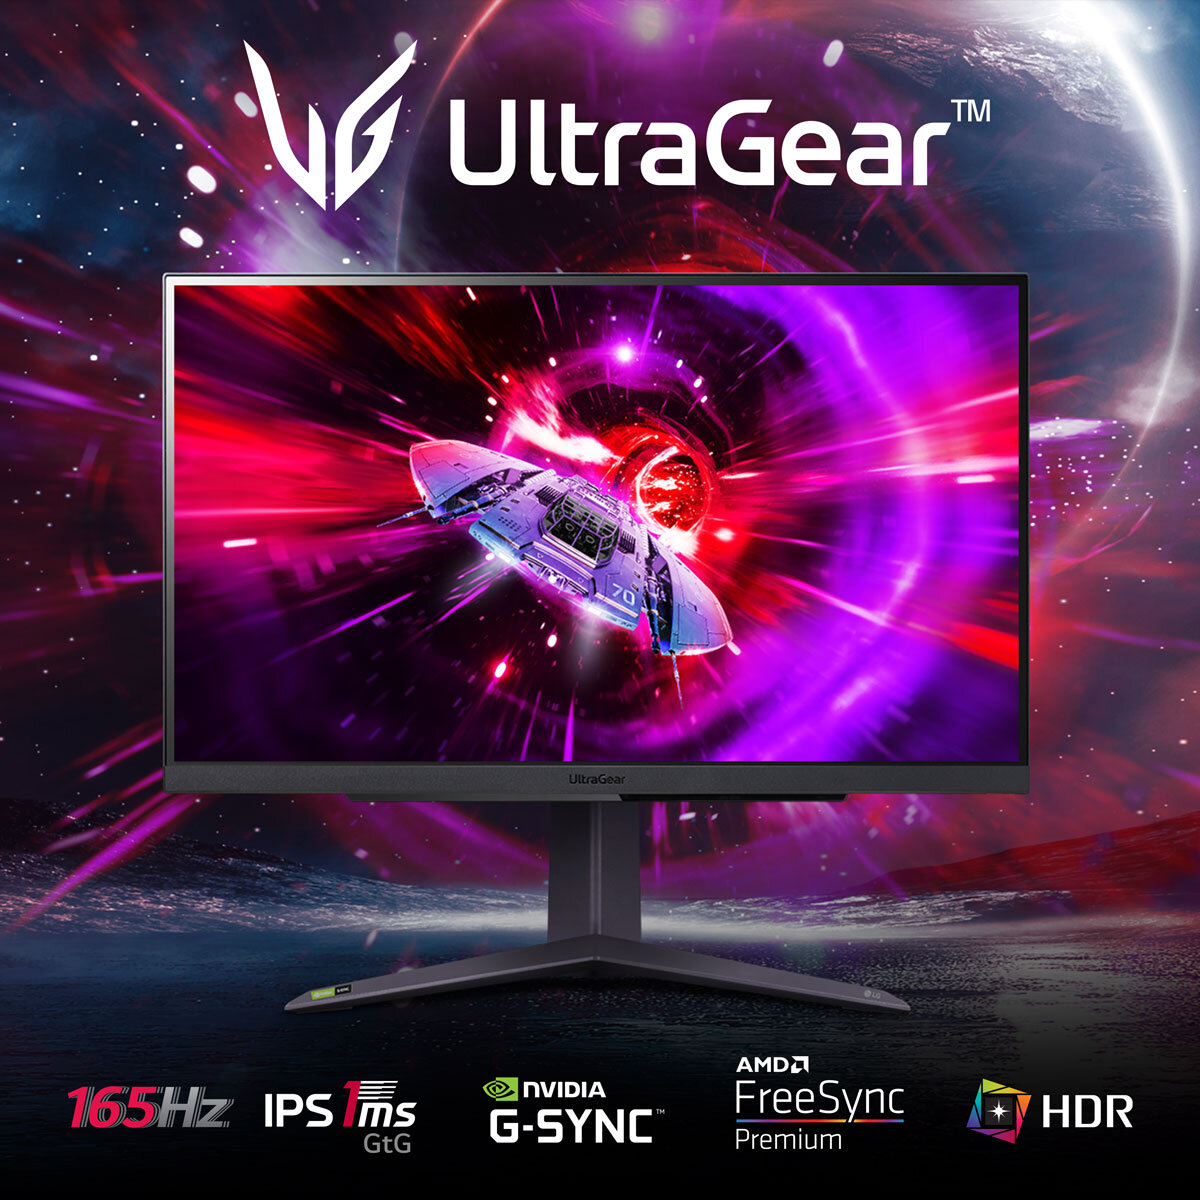 Buy LG UltraGear QHD 165Hz IPS Gaming Monitor, 27GR75Q-B at costco.co.uk